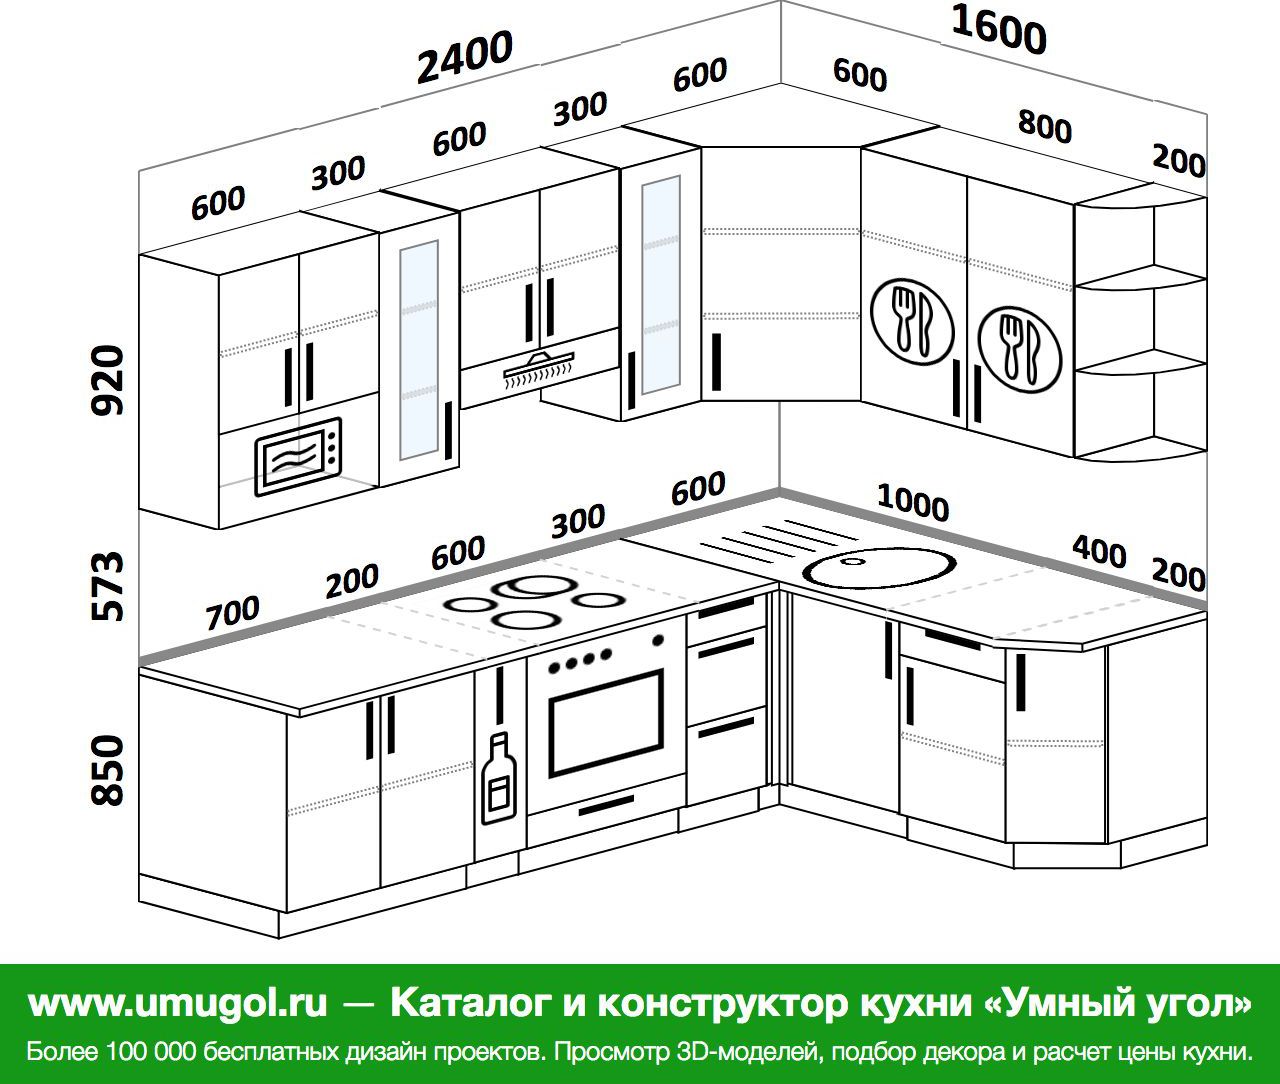 Кухня 2500мм на 1600мм полный чертеж